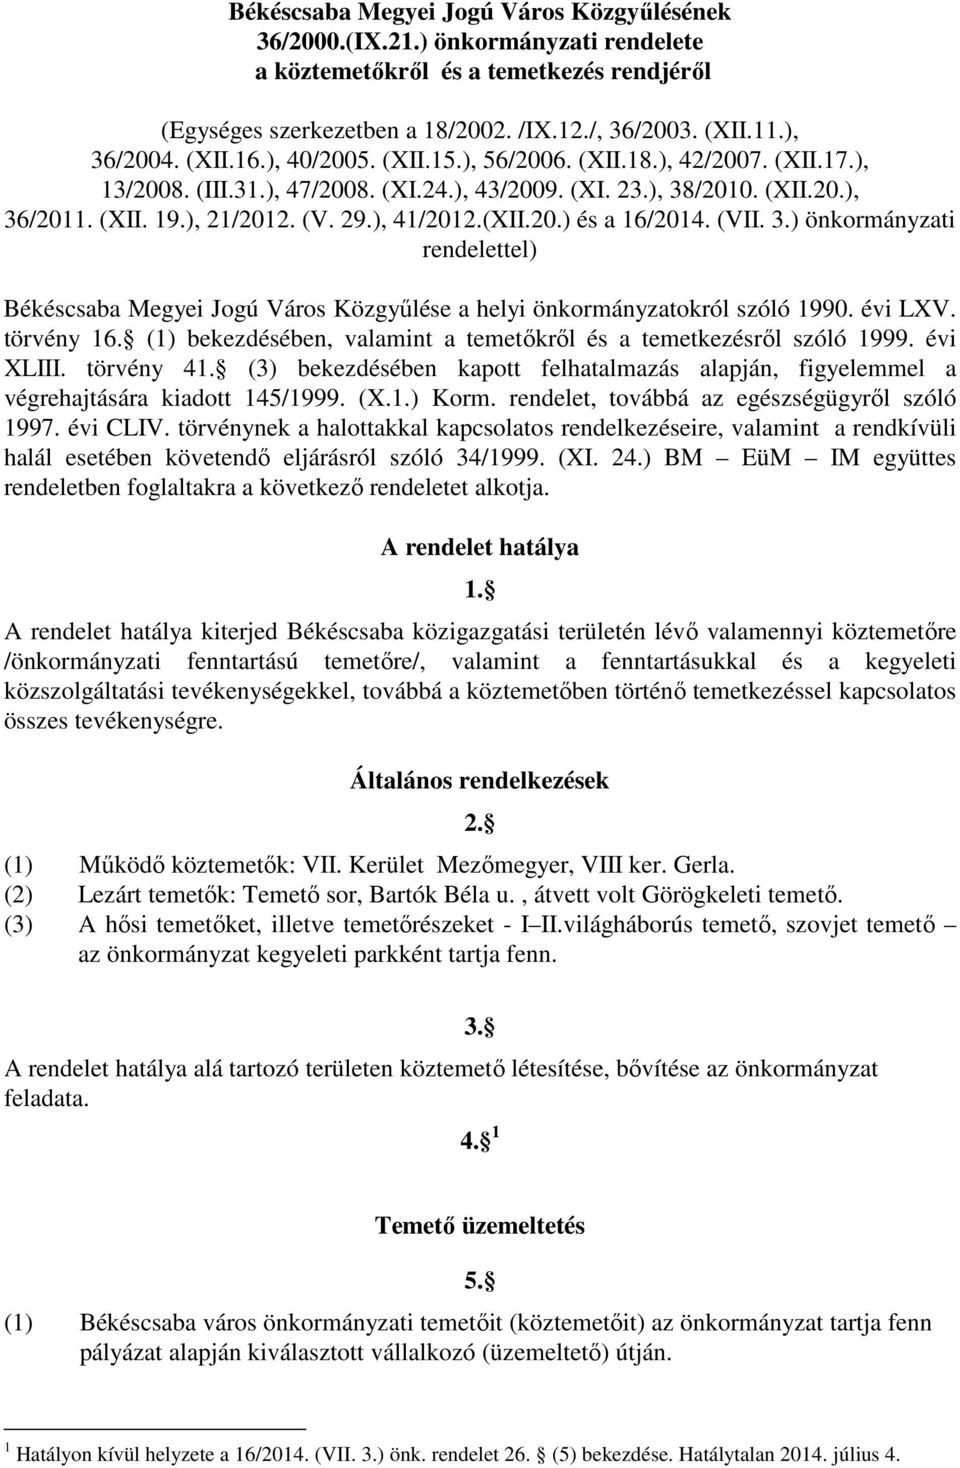 (XII.20.) és a 16/2014. (VII. 3.) önkormányzati rendelettel) Békéscsaba Megyei Jogú Város Közgyőlése a helyi önkormányzatokról szóló 1990. évi LXV. törvény 16.